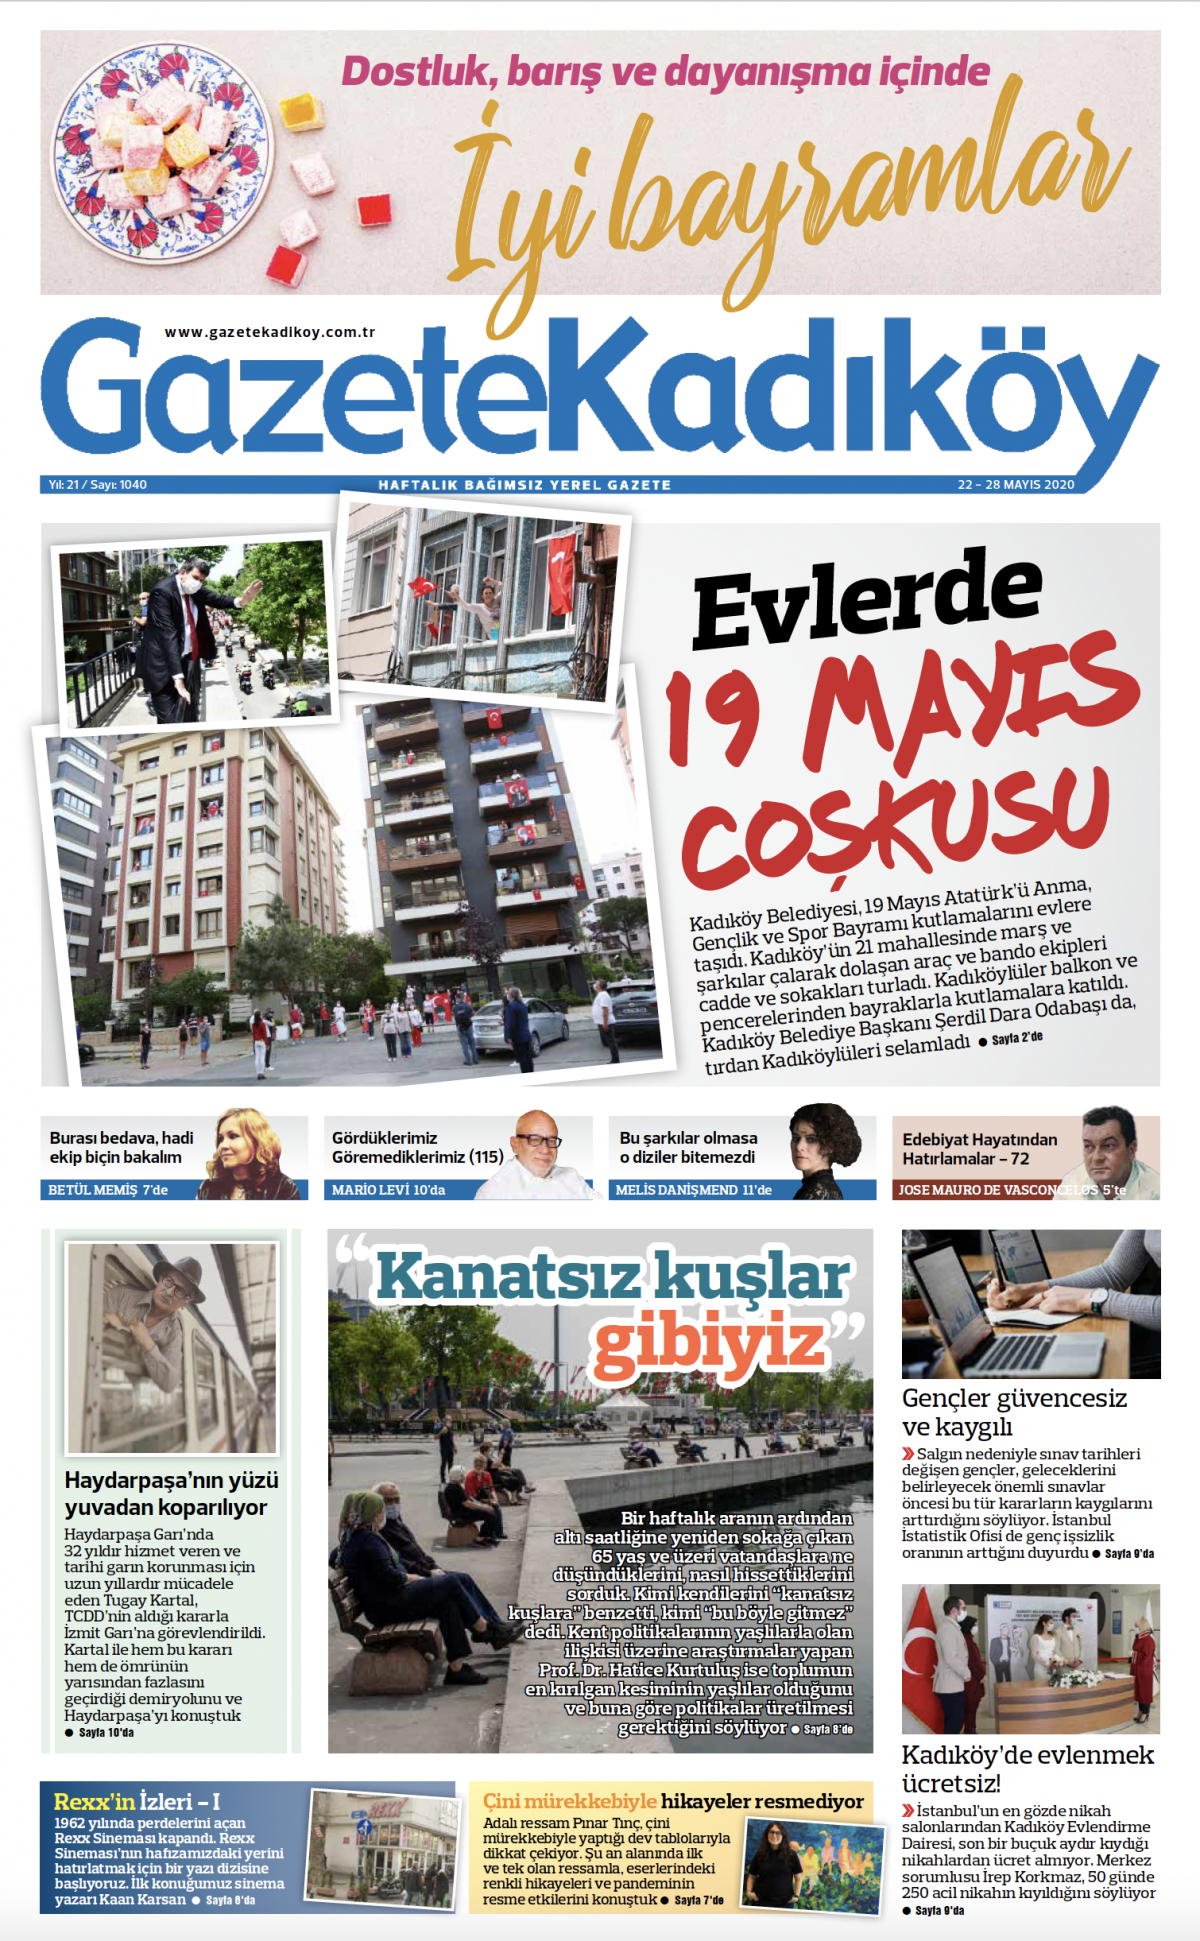 Gazete Kadıköy - 1040. Sayı